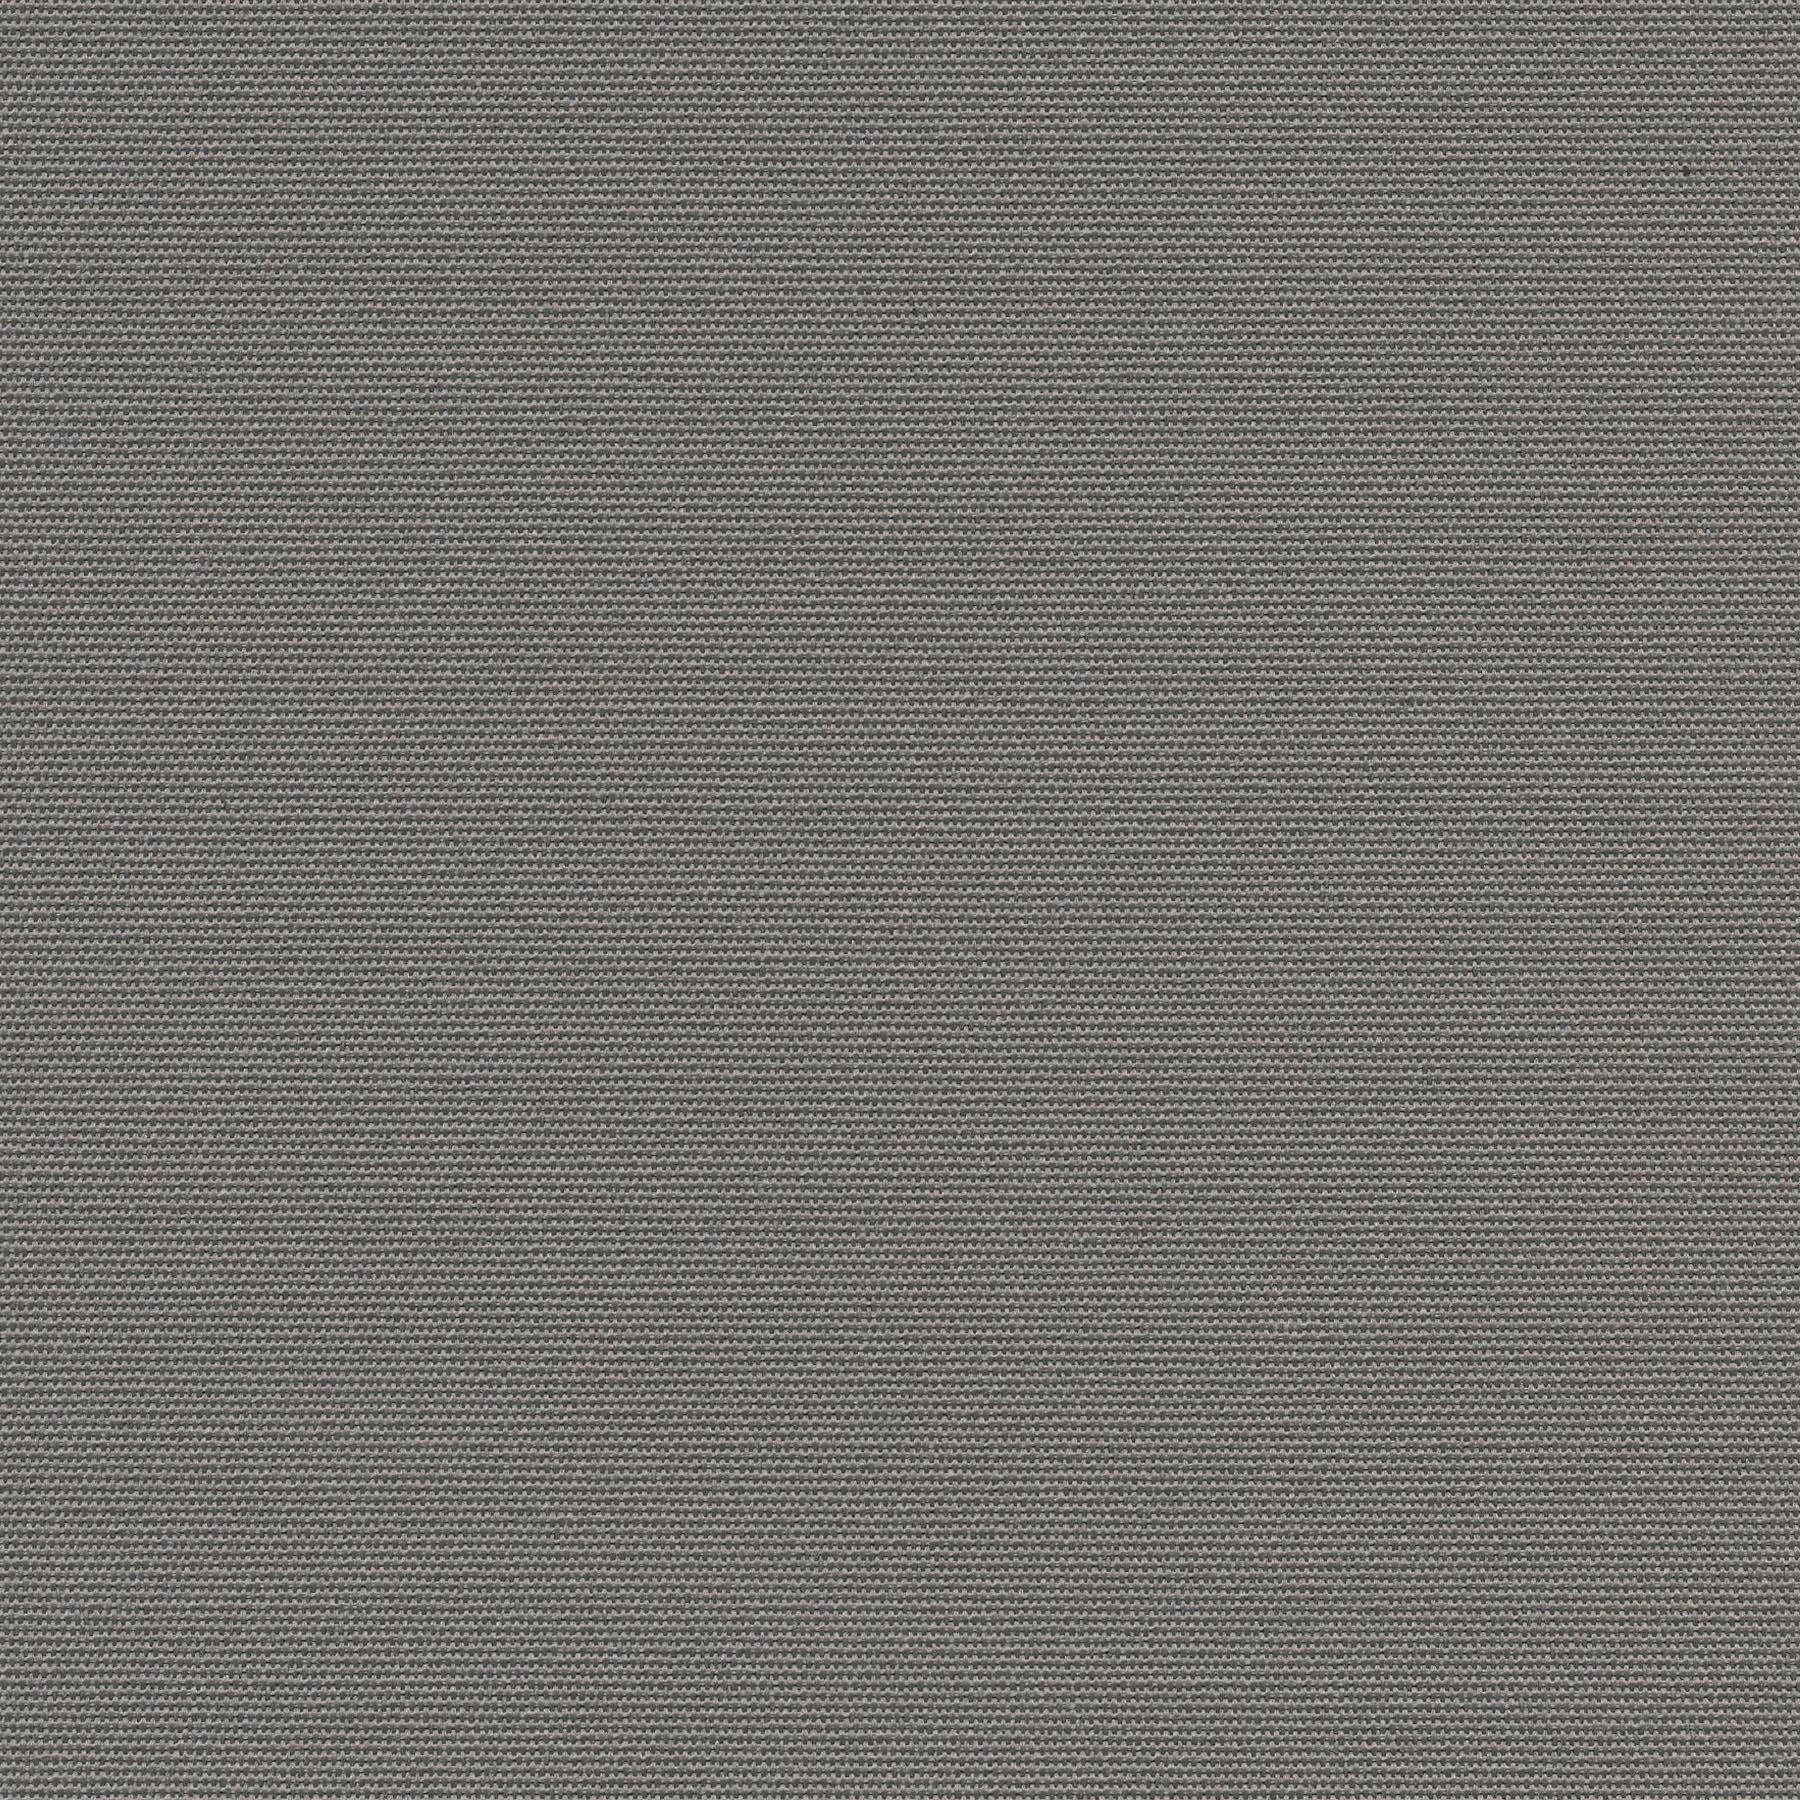 Altex - Fabric - ZEPHYR - Graphite/Cream - 317